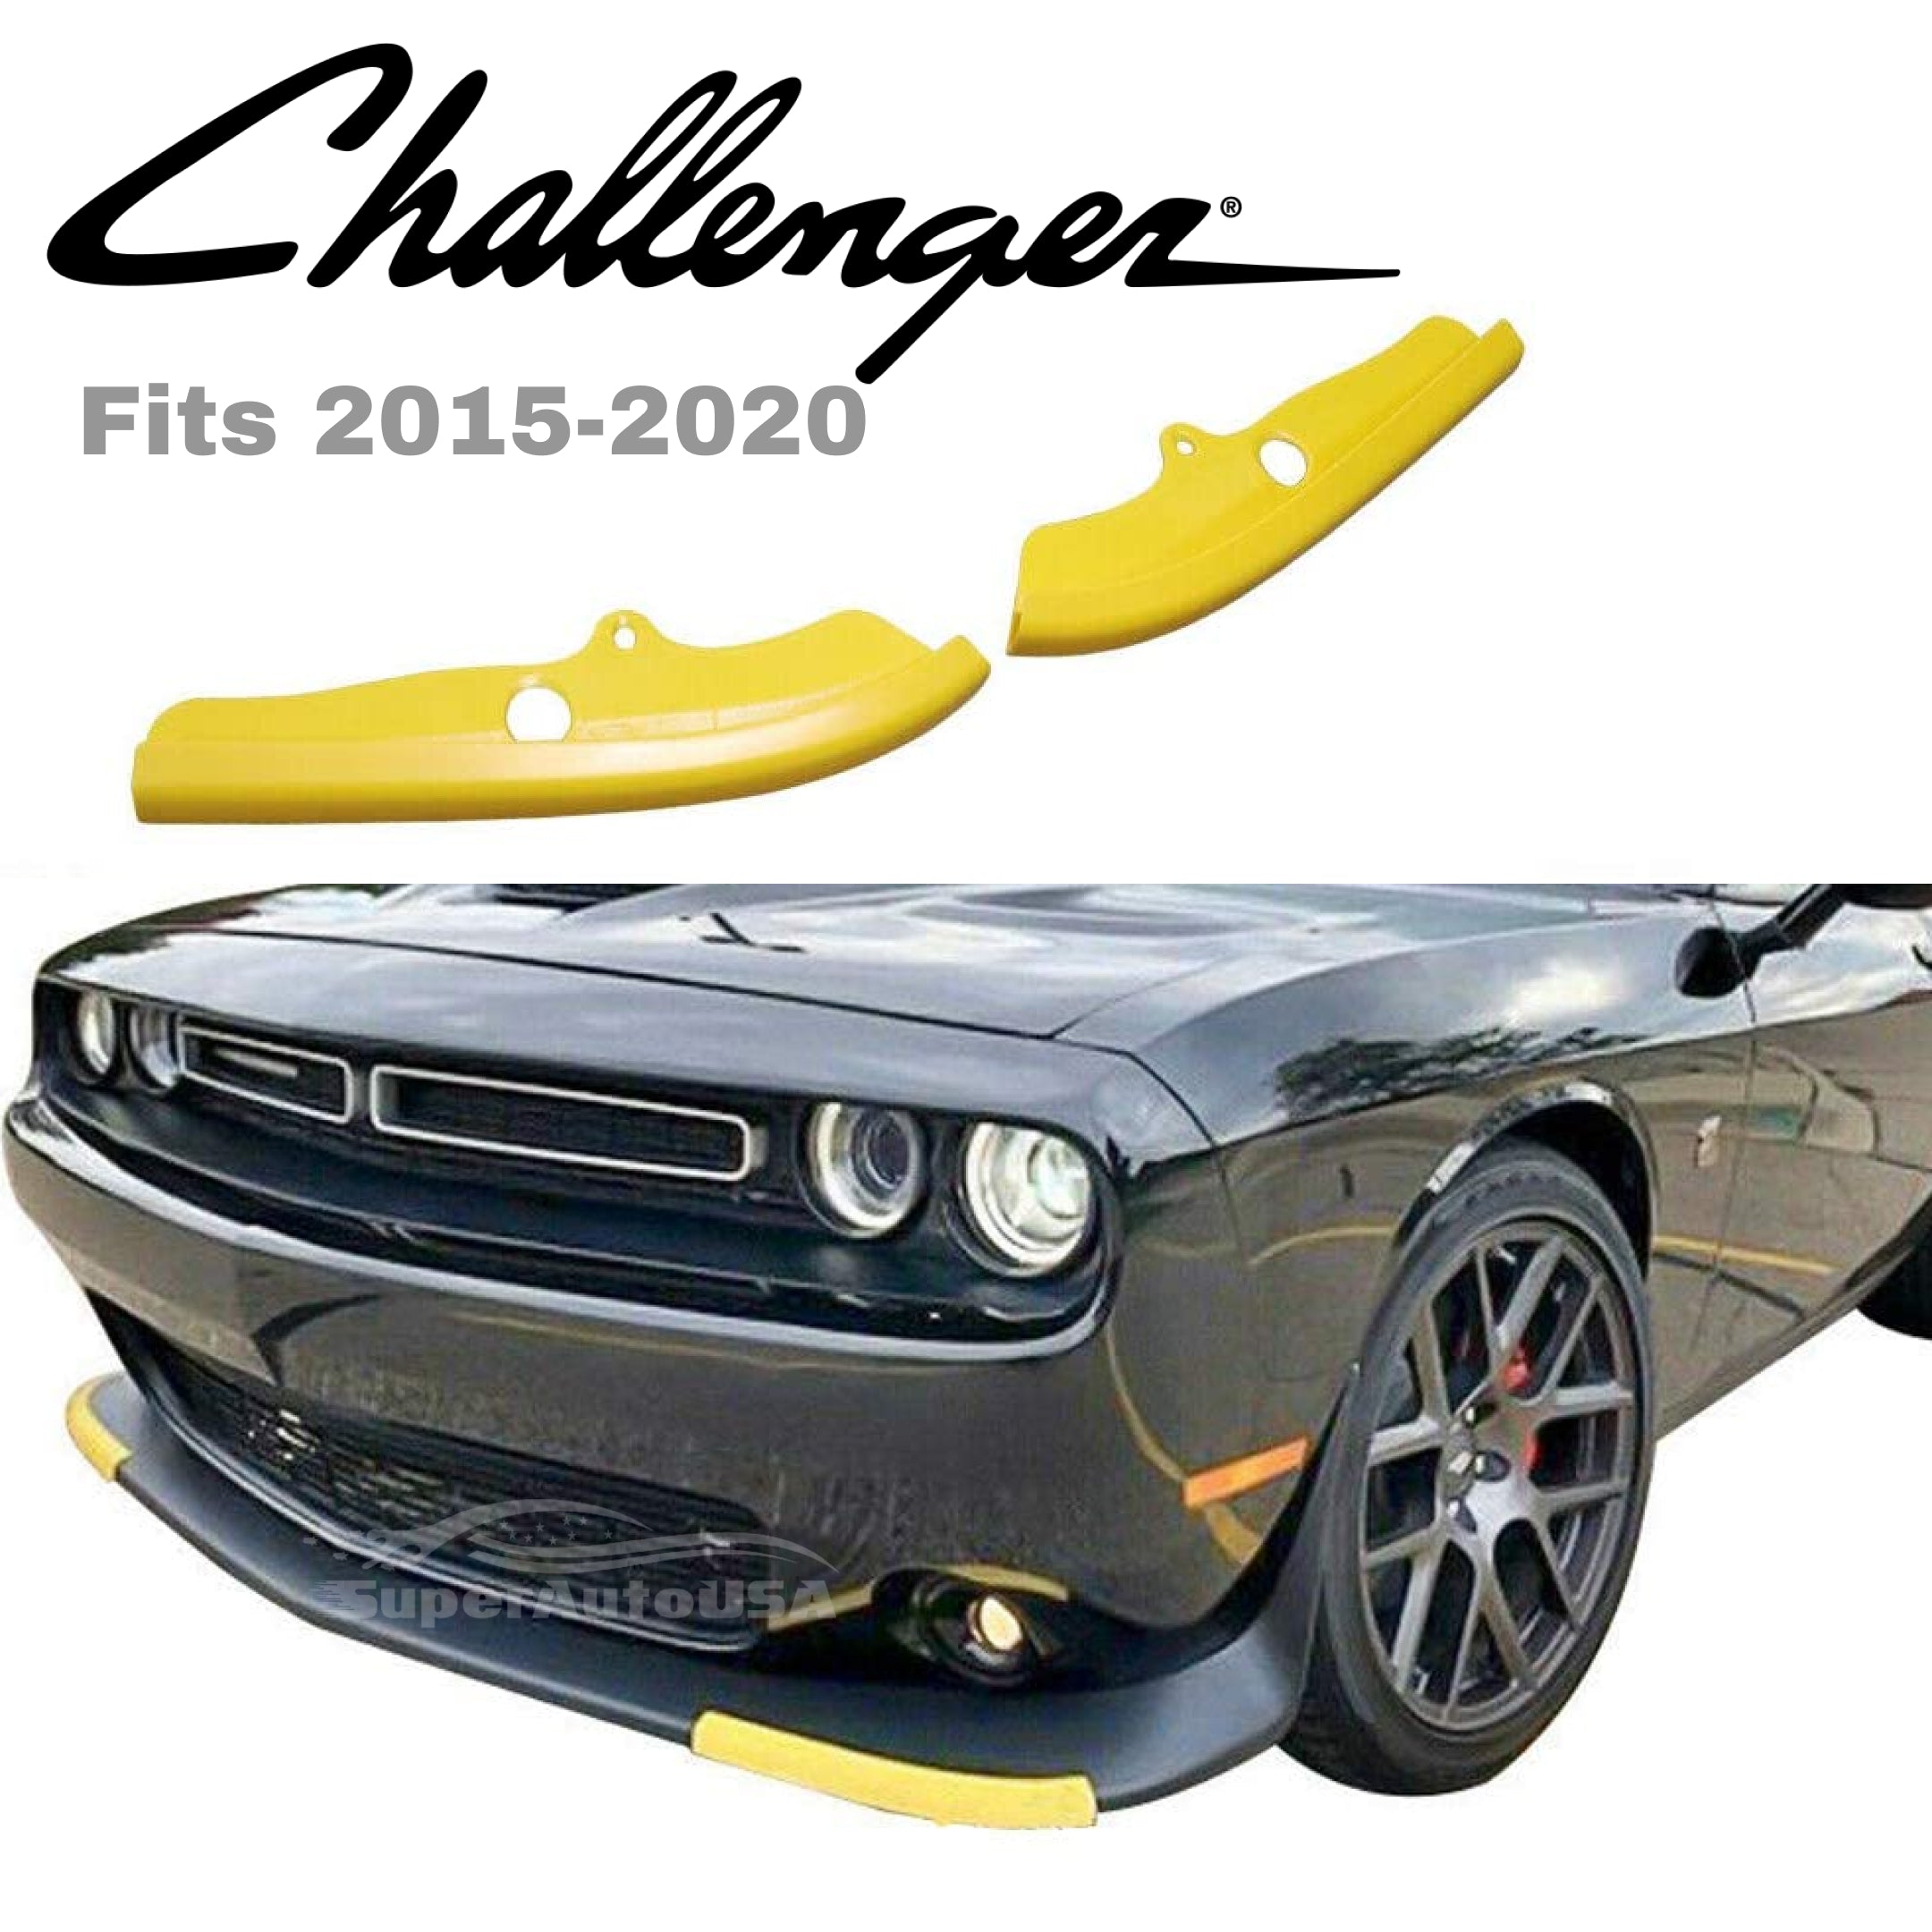 Protector divisor de labios para parachoques delantero para Dodge Challenger R/T SCAT Pack 2015-2020 (amarillo) - 0